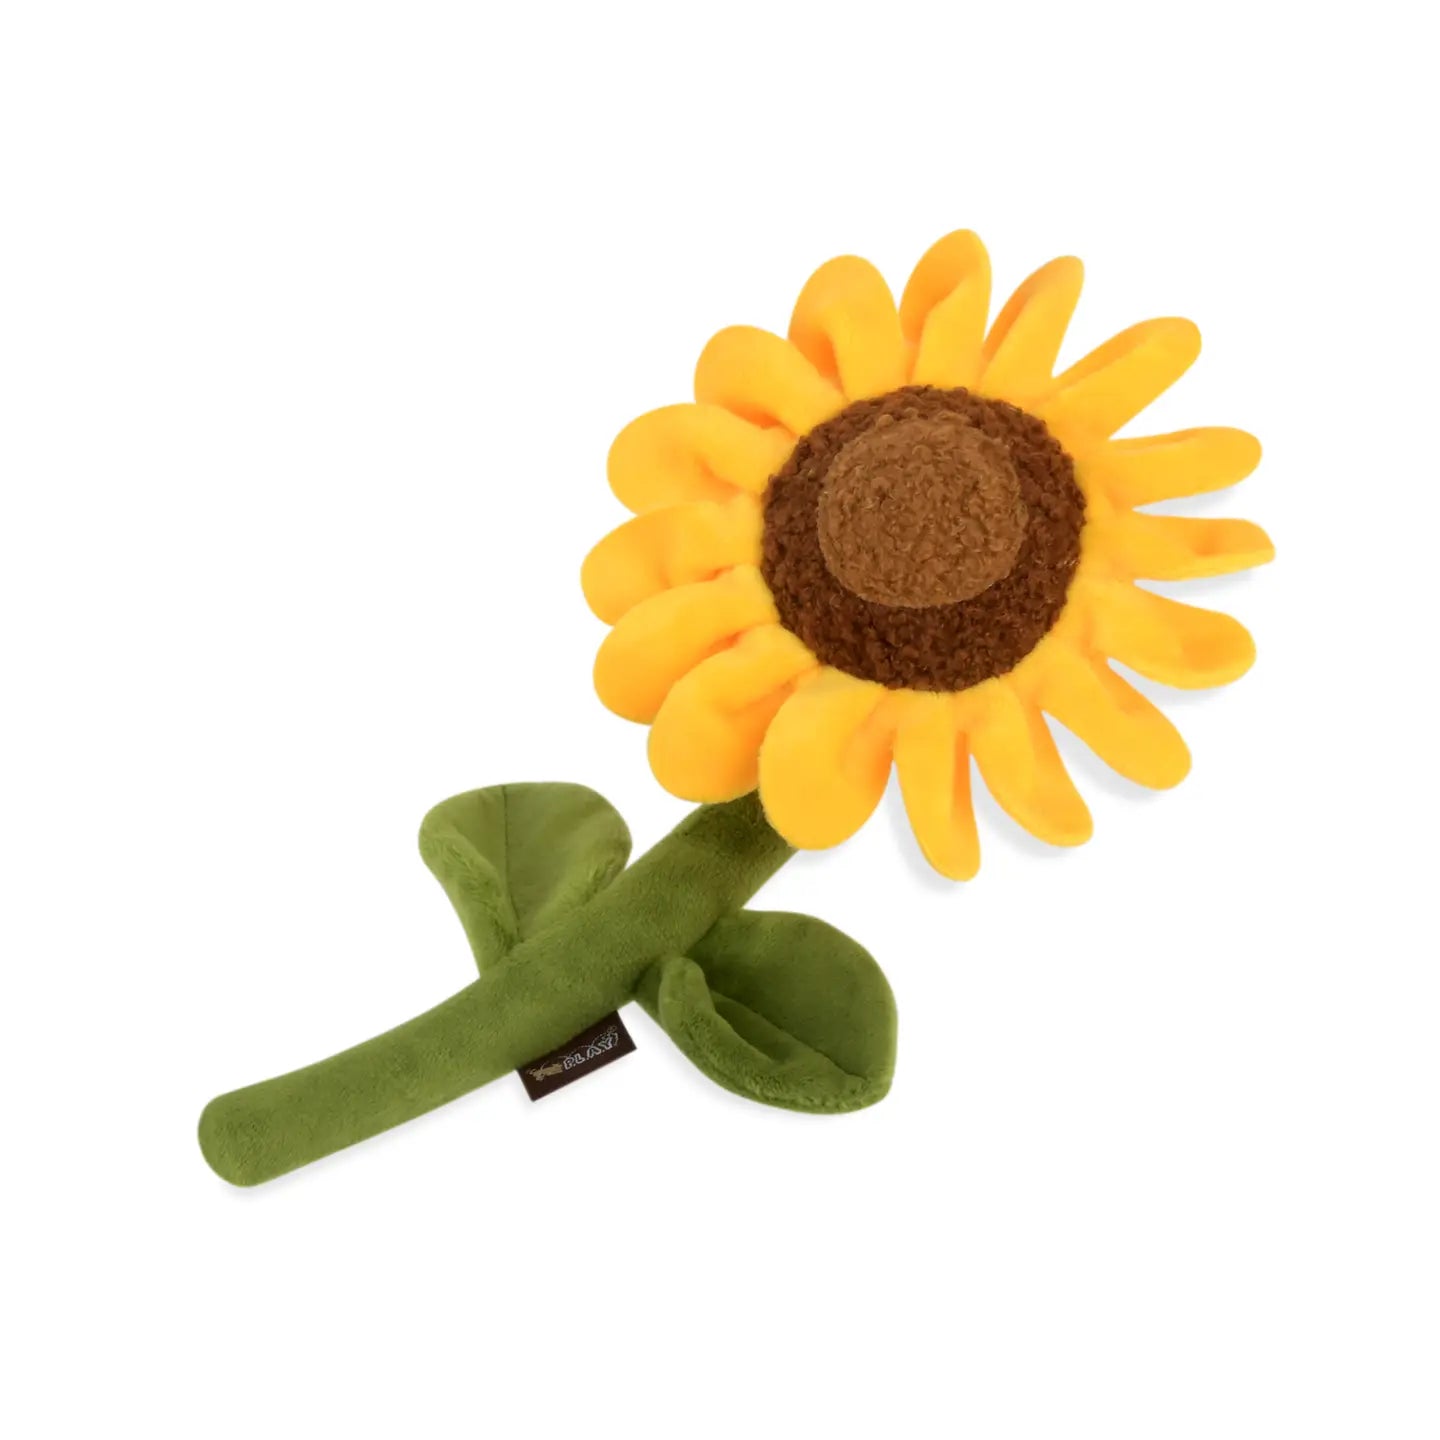 Sassy Sunflower Dog Toy - Crew LaLa